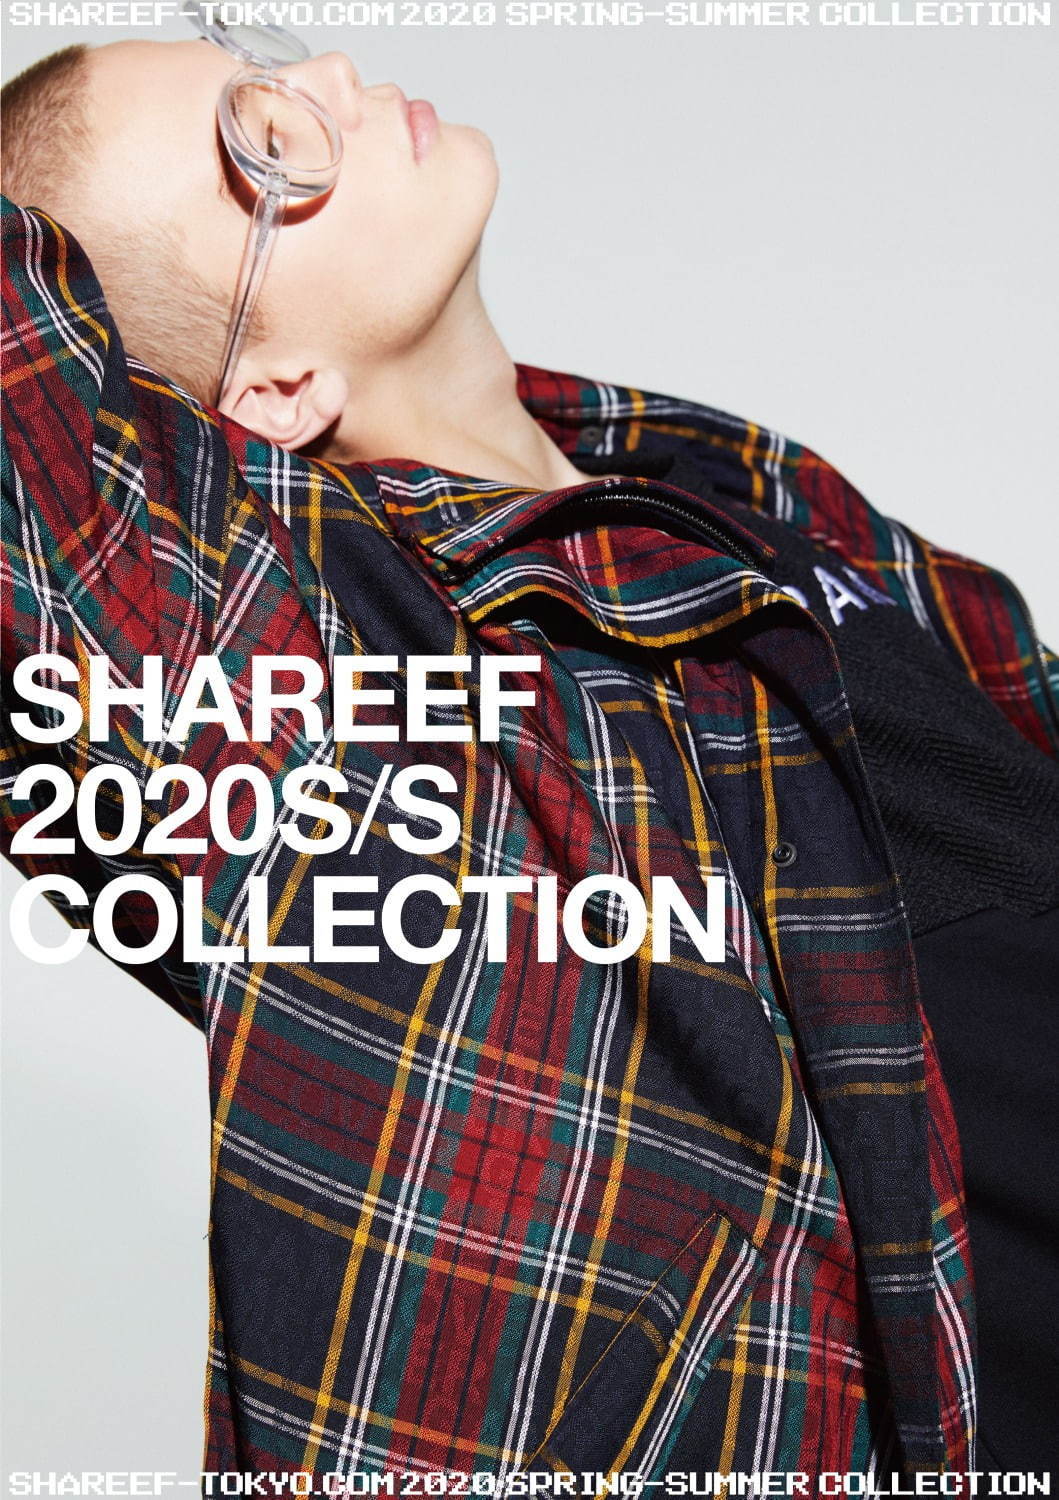 シャリーフ(SHAREEF) 2020年春夏メンズコレクション  - 写真2